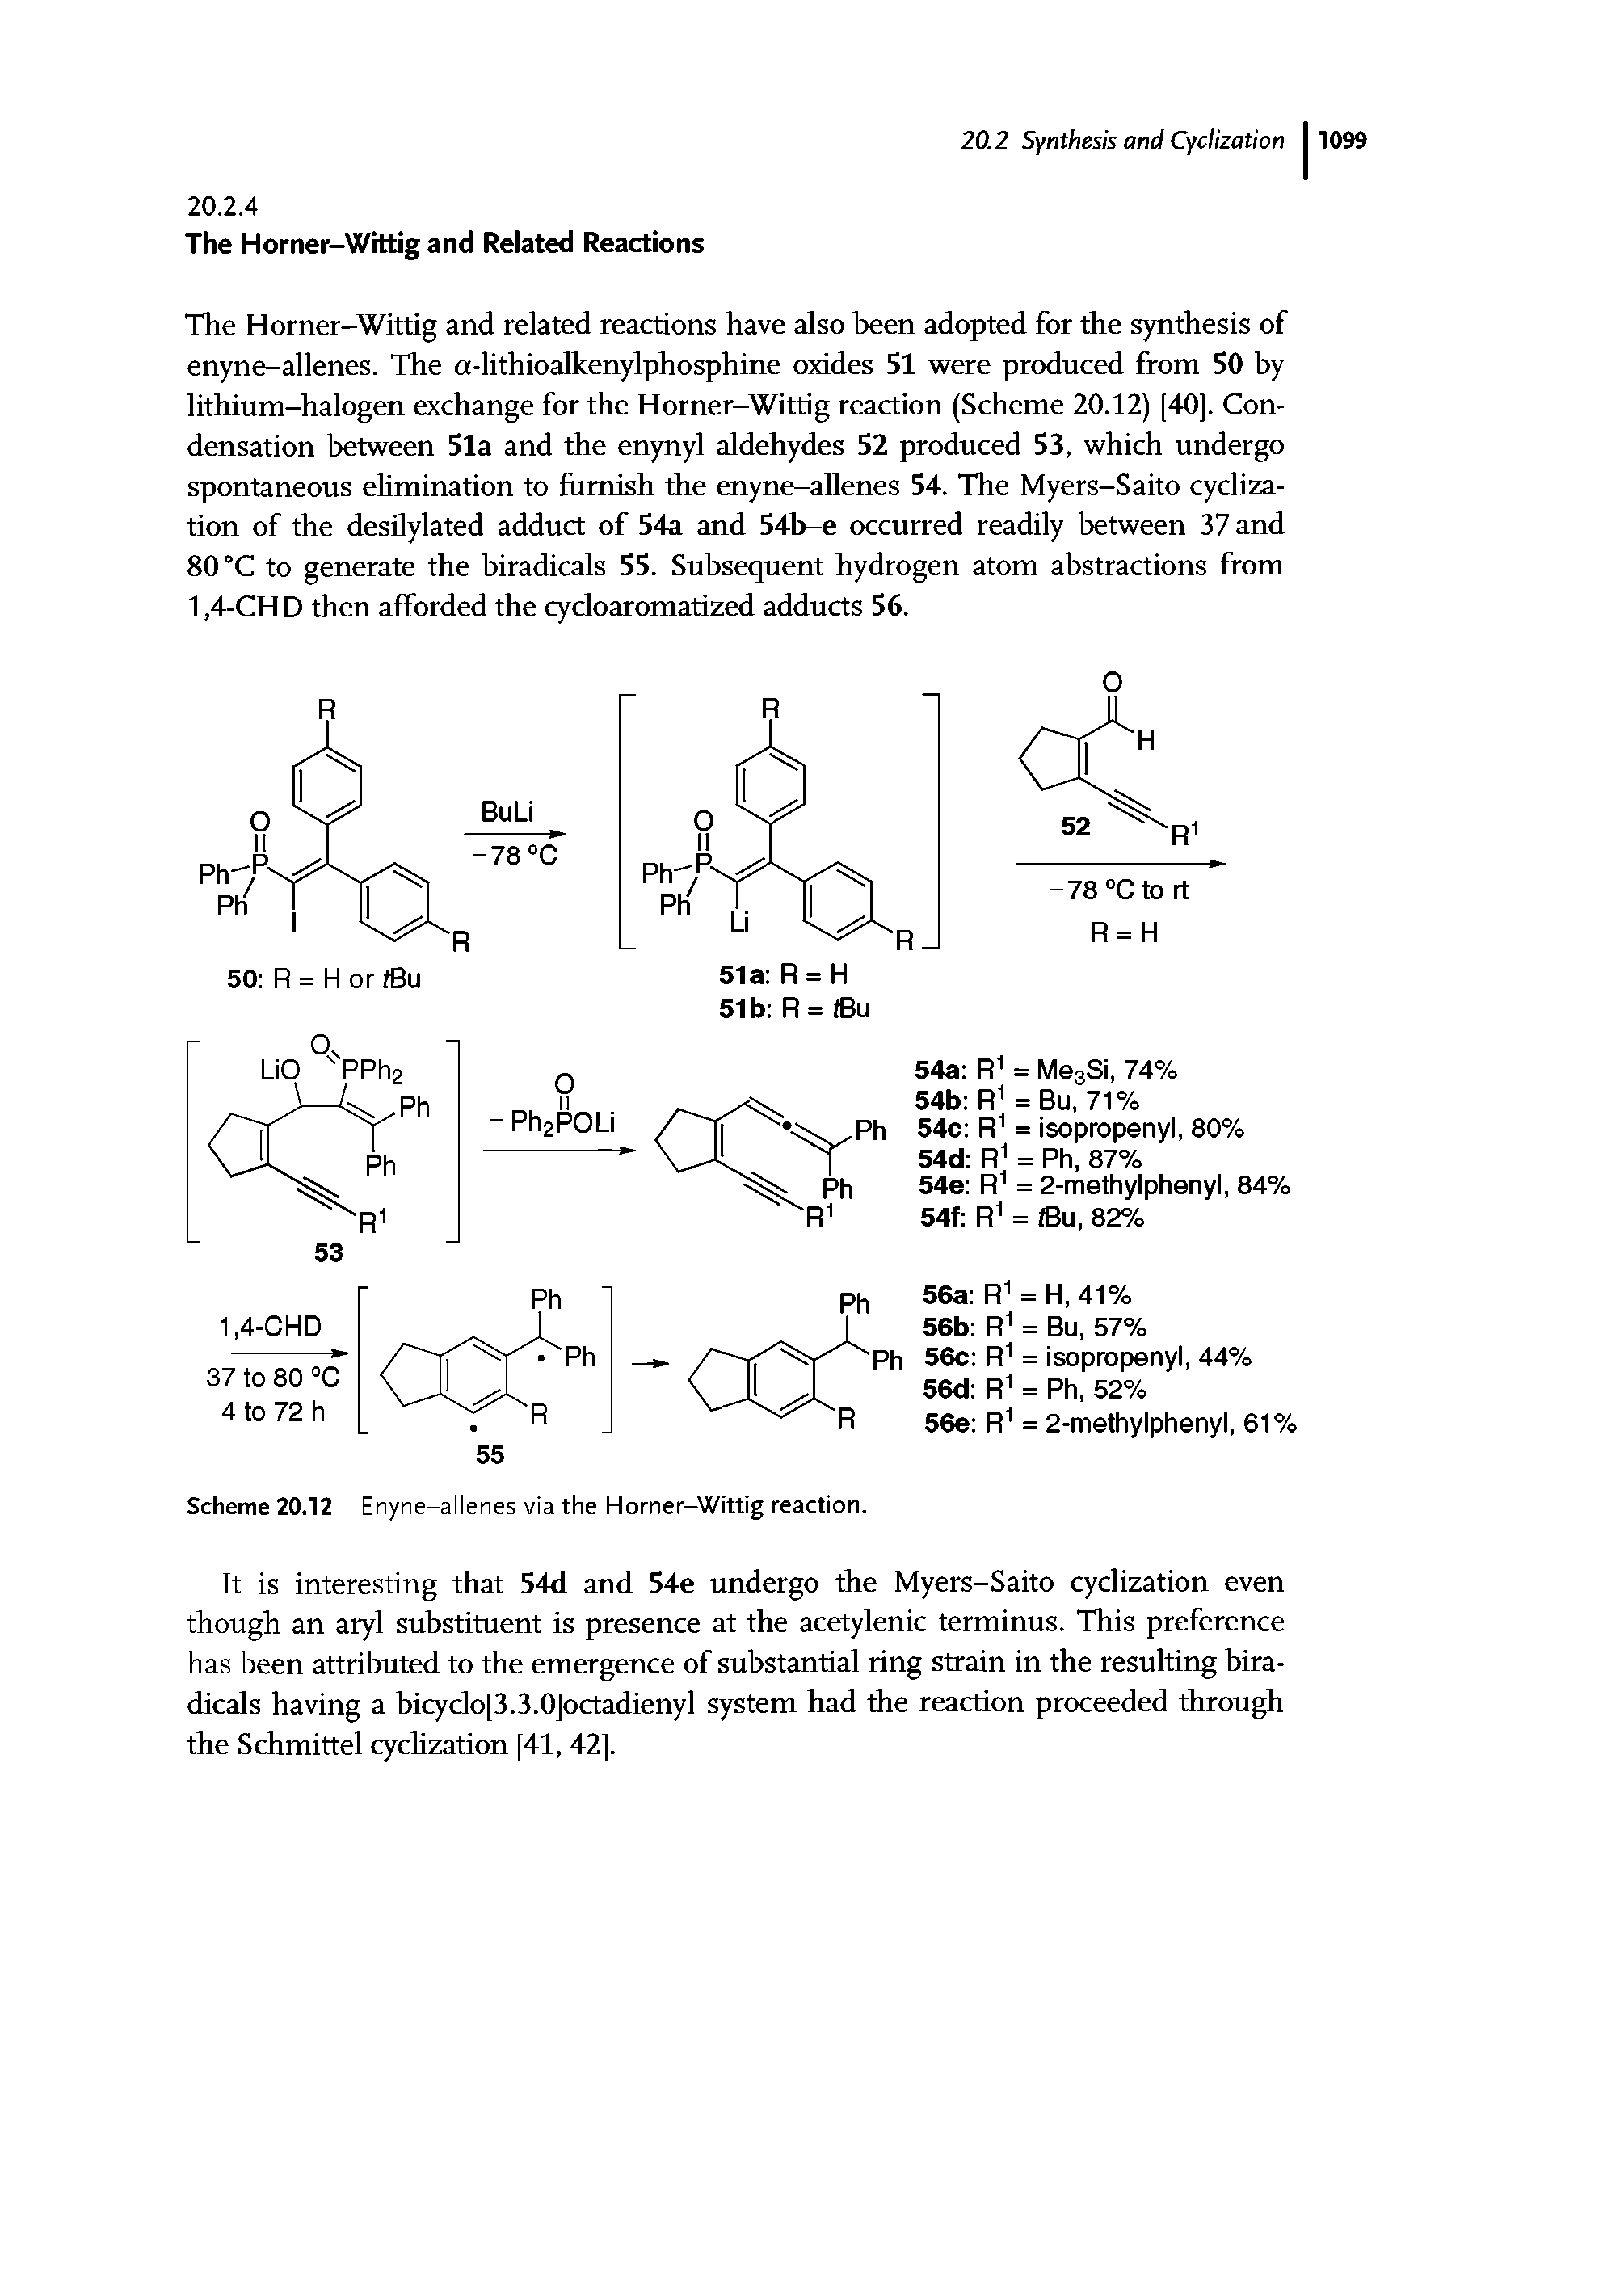 Scheme 20.12 Enyne-allenes via the Horner-Wittig reaction.